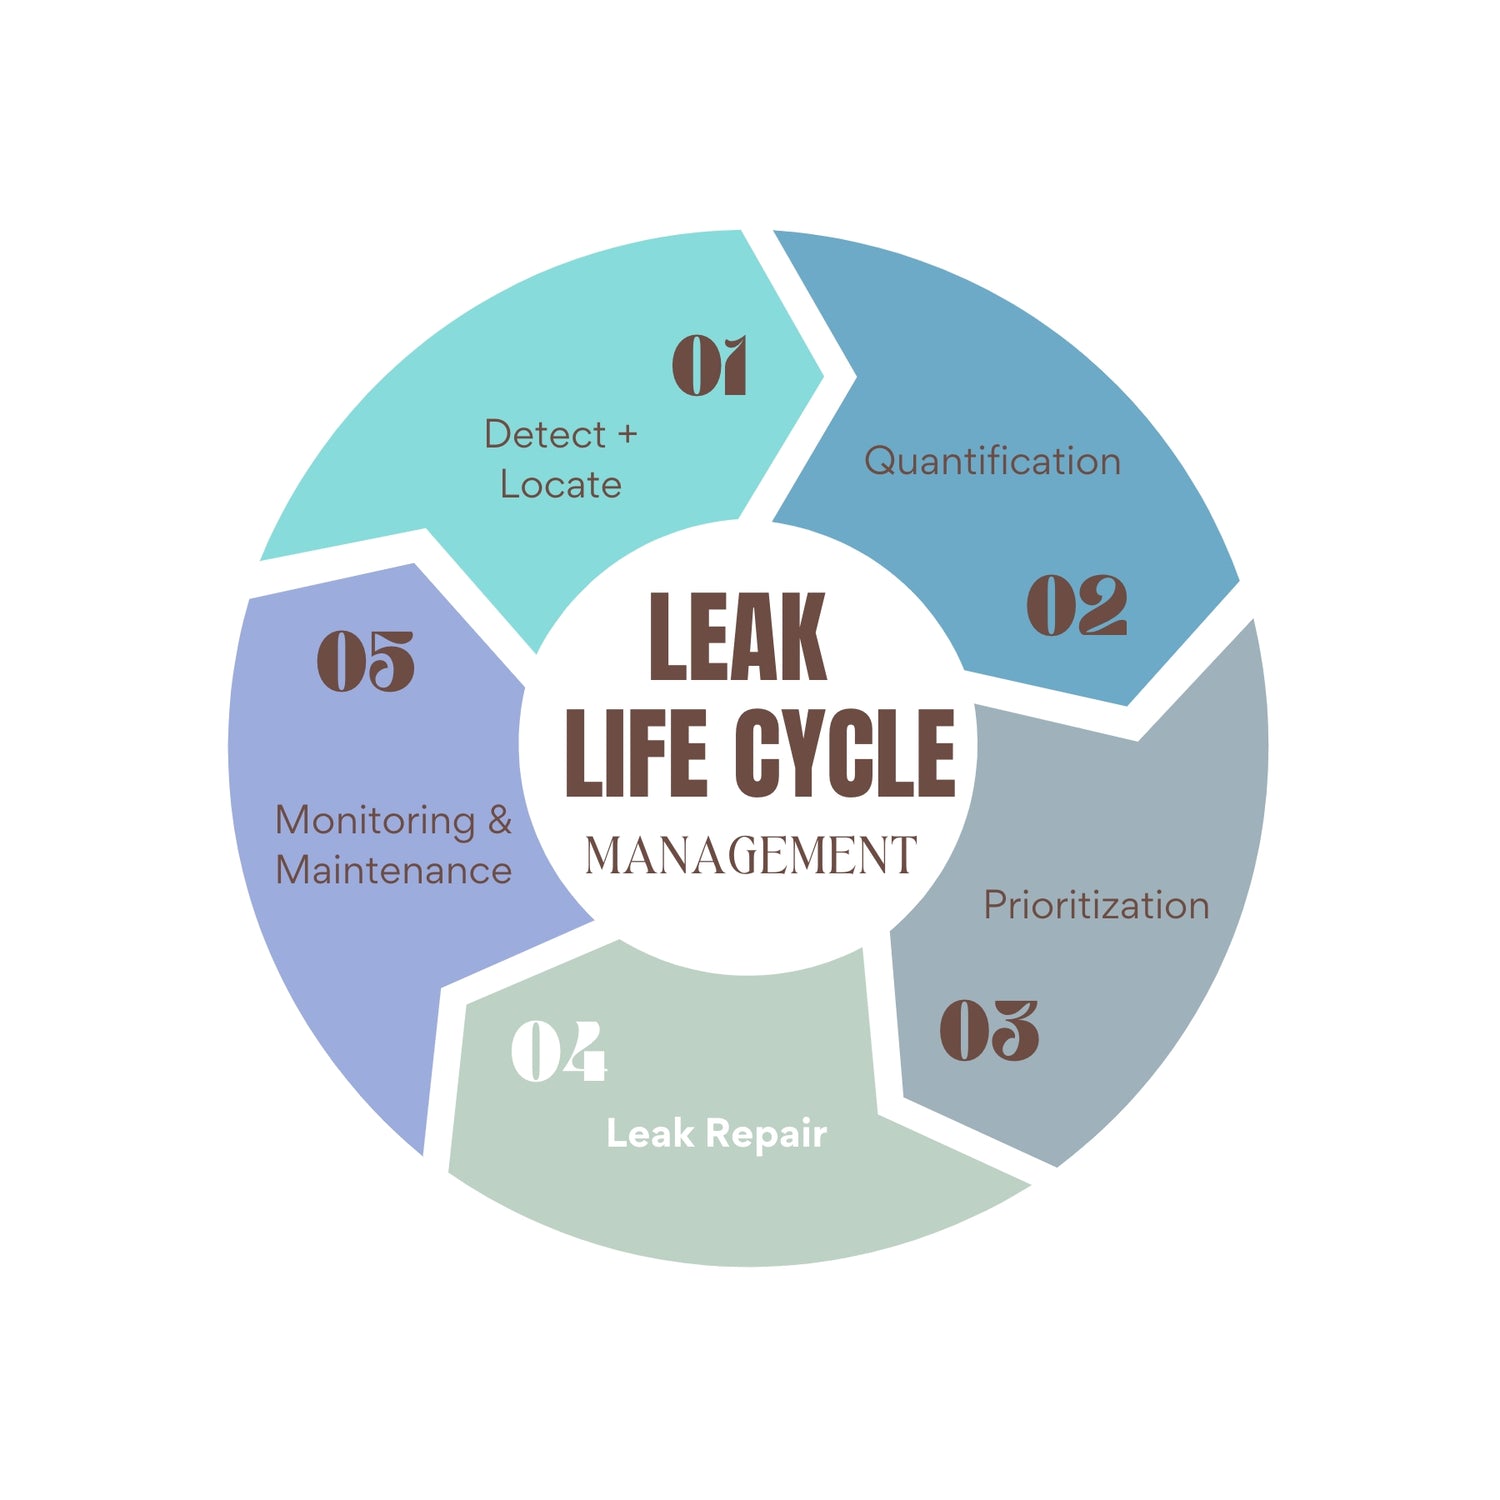 Step4 of Prosaris leak life cycle management : Leak Repair